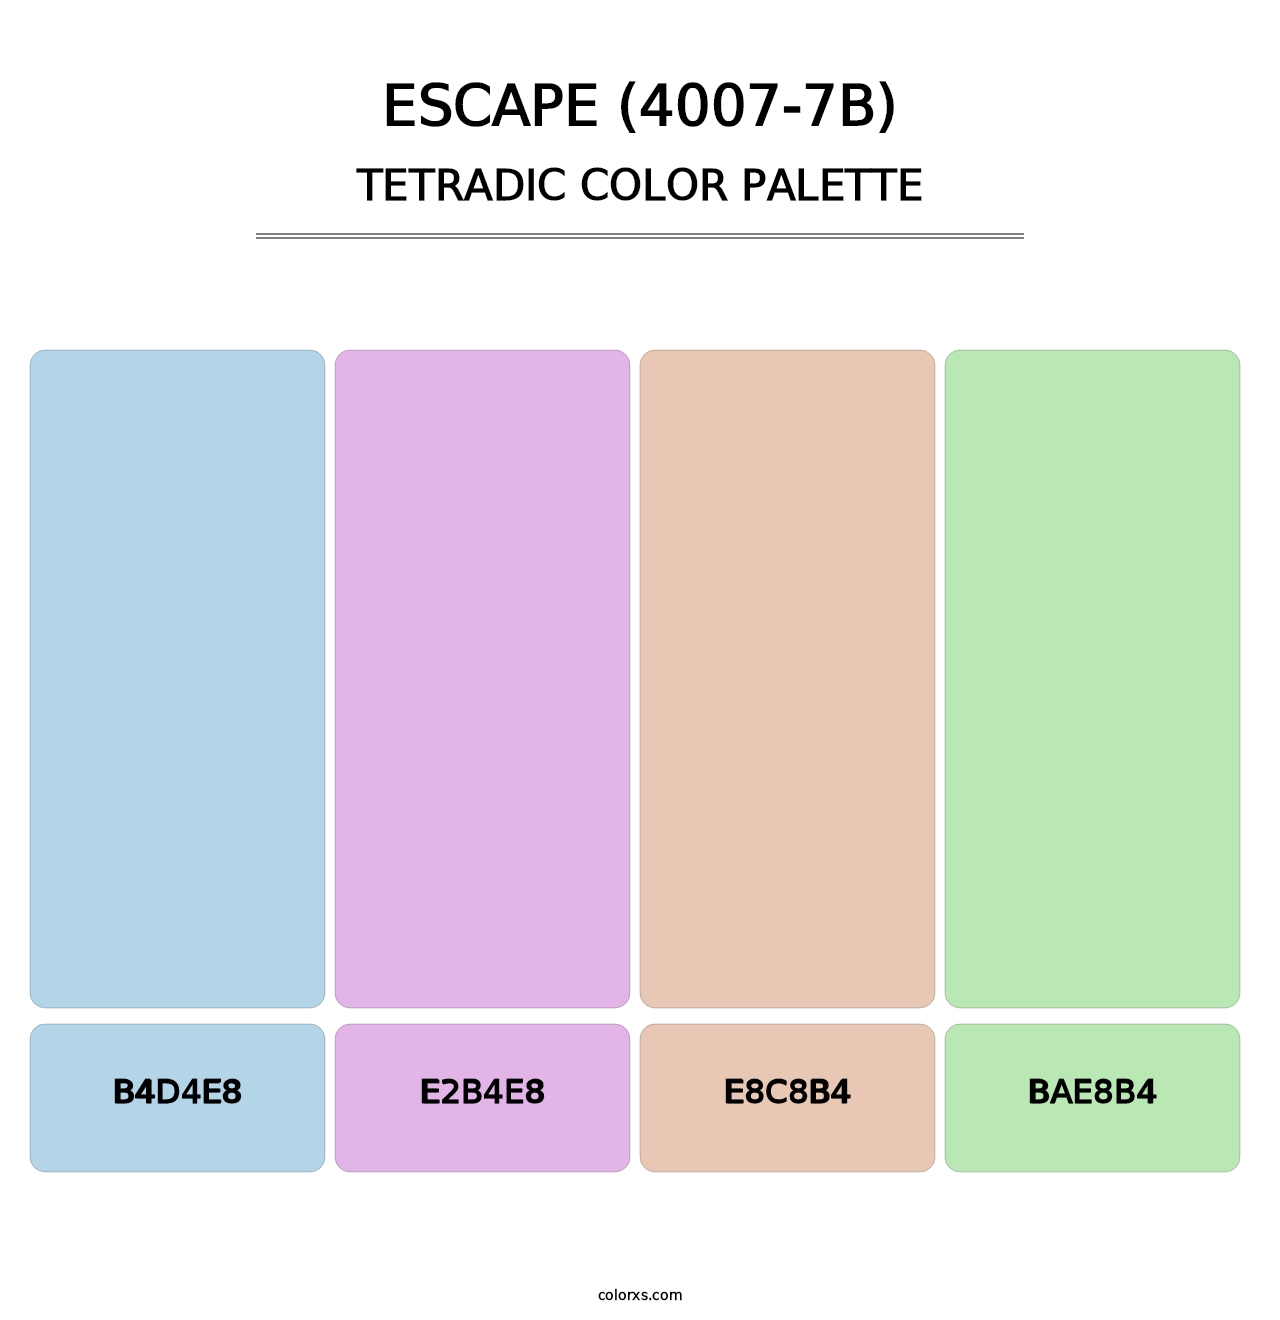 Escape (4007-7B) - Tetradic Color Palette